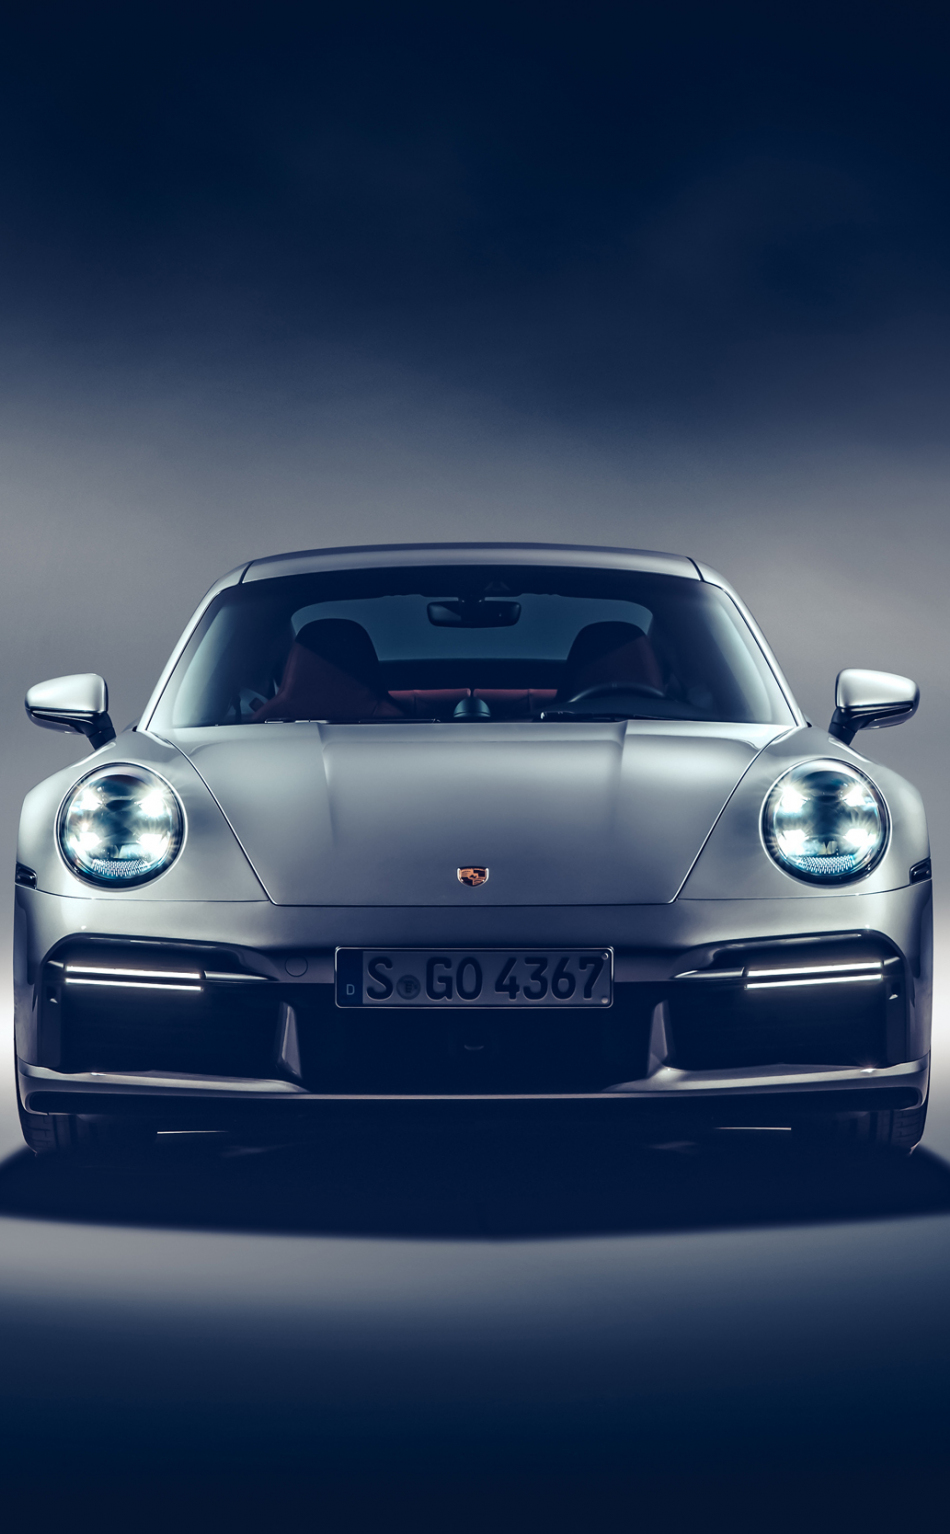 Porsche 911 Turbo S Iphone Wallpapers